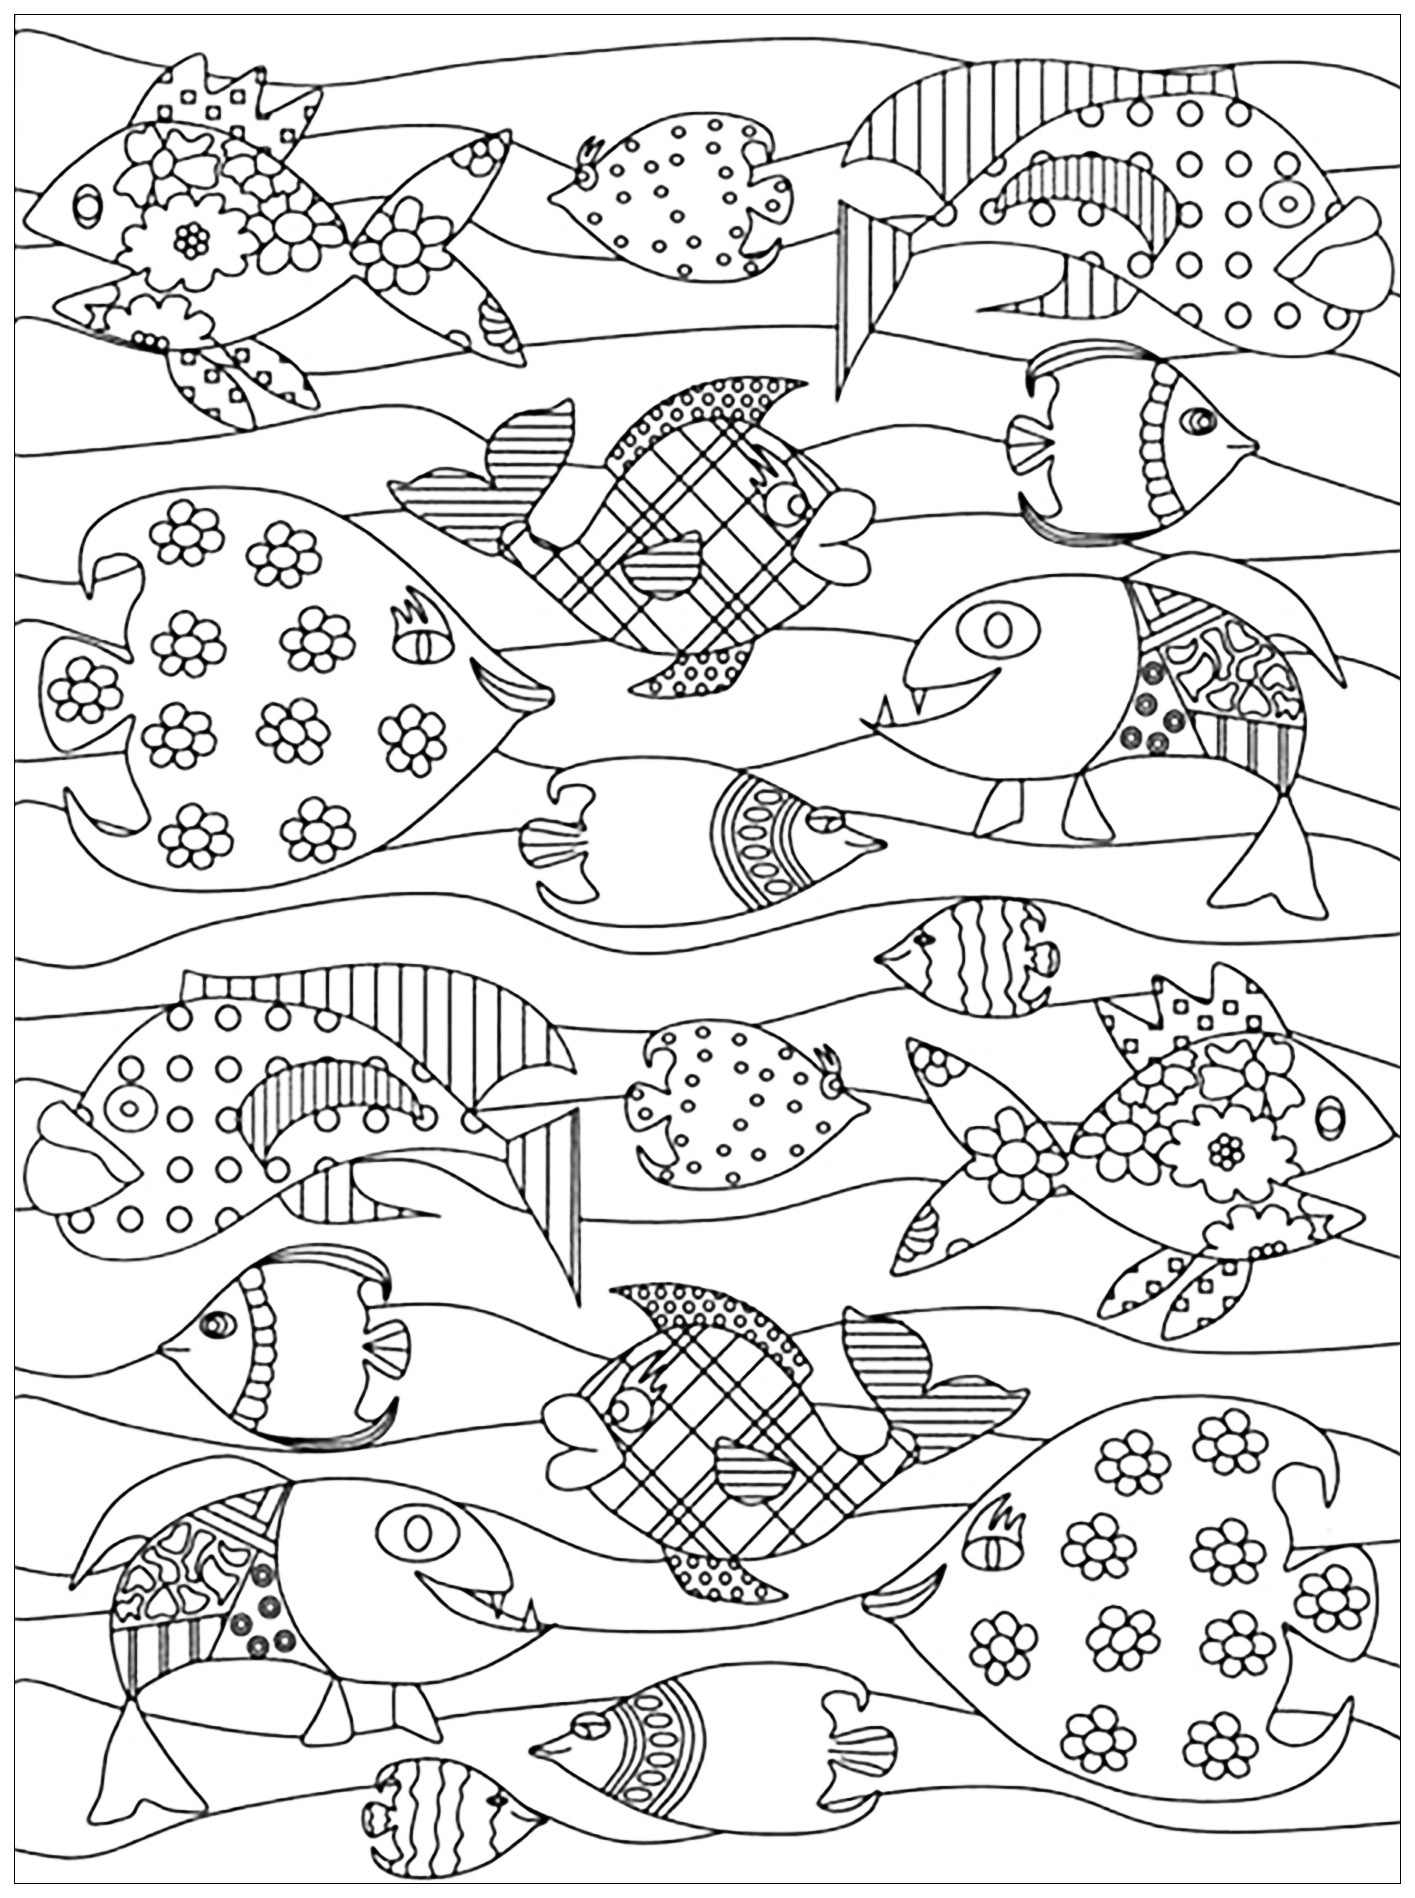 Desenhos grátis para colorir de Peixes para imprimir e colorir, para crianças